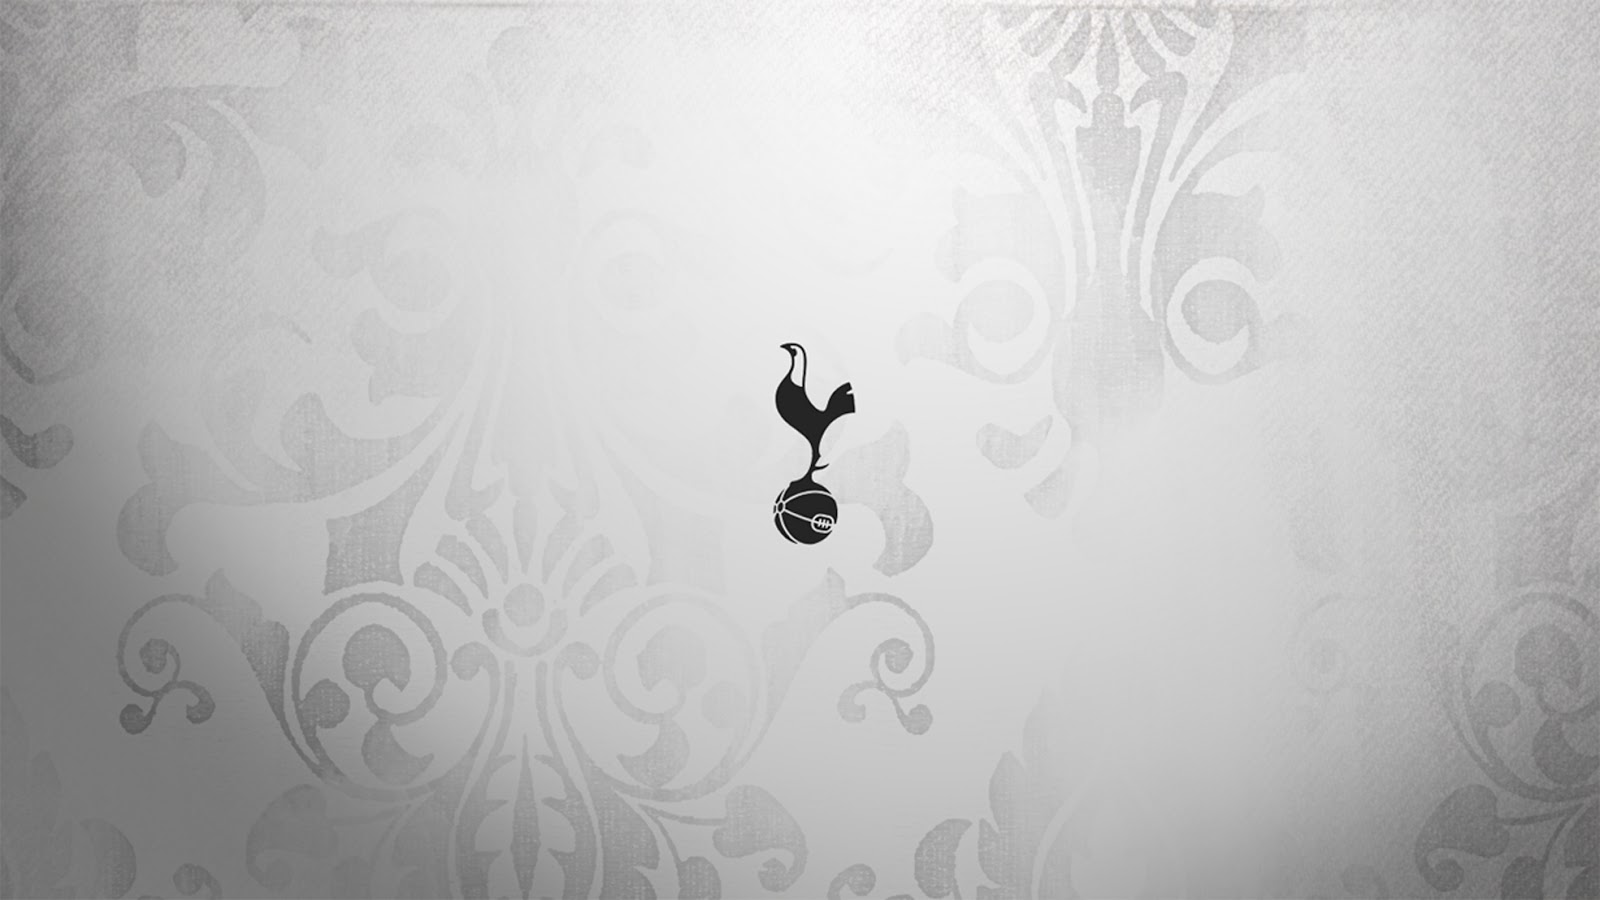 Tottenham Hotspur Wallpaper Perfect